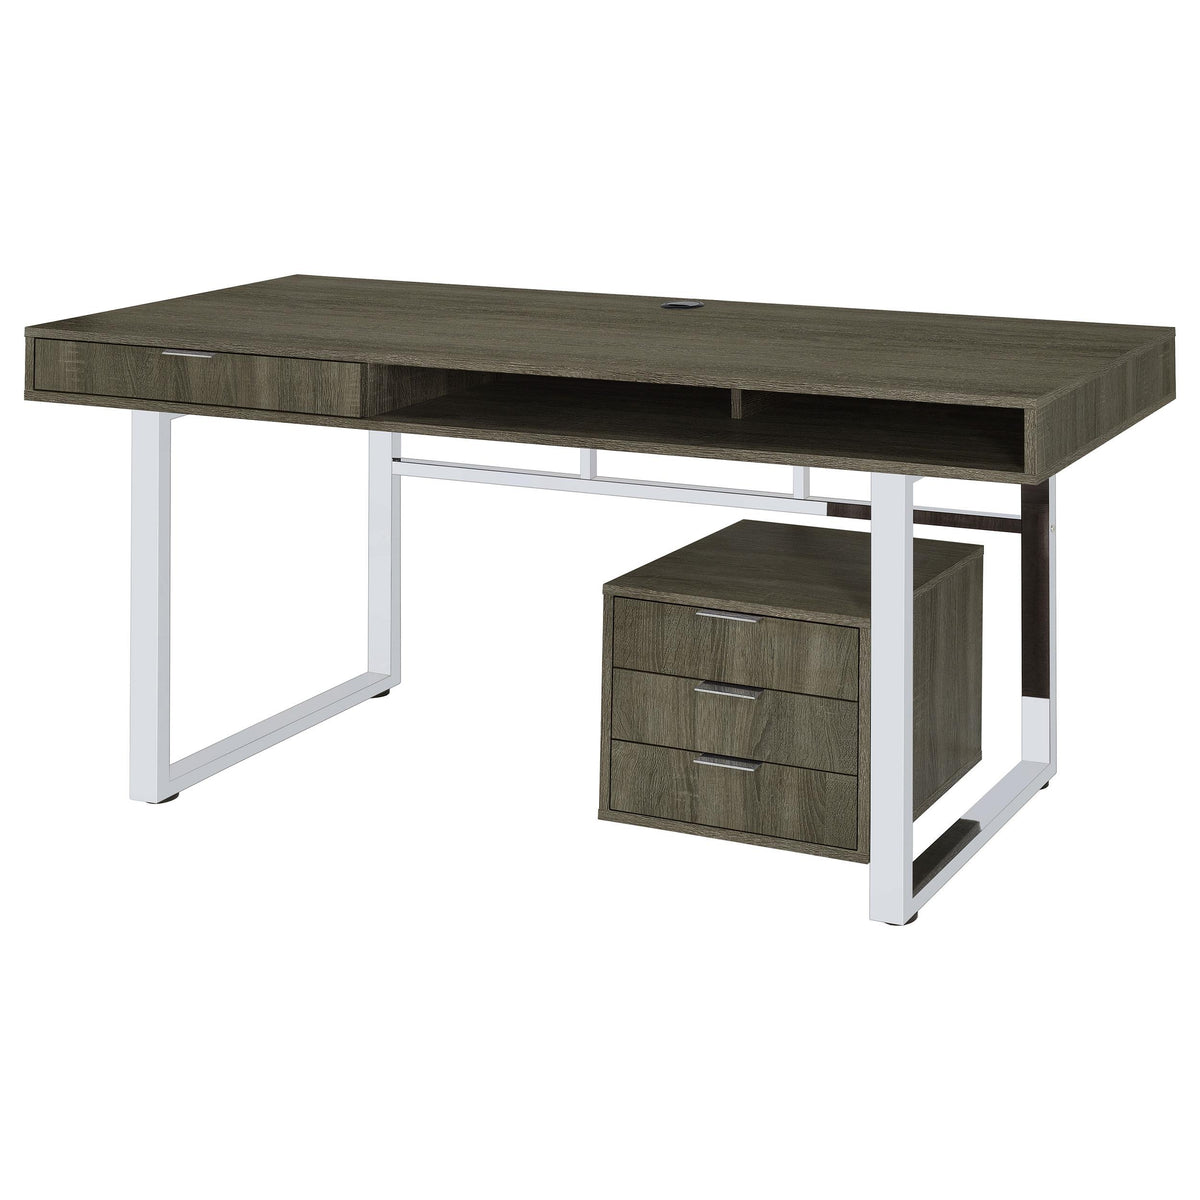 Whitman 4-drawer Writing Desk Weathered Grey  Half Price Furniture